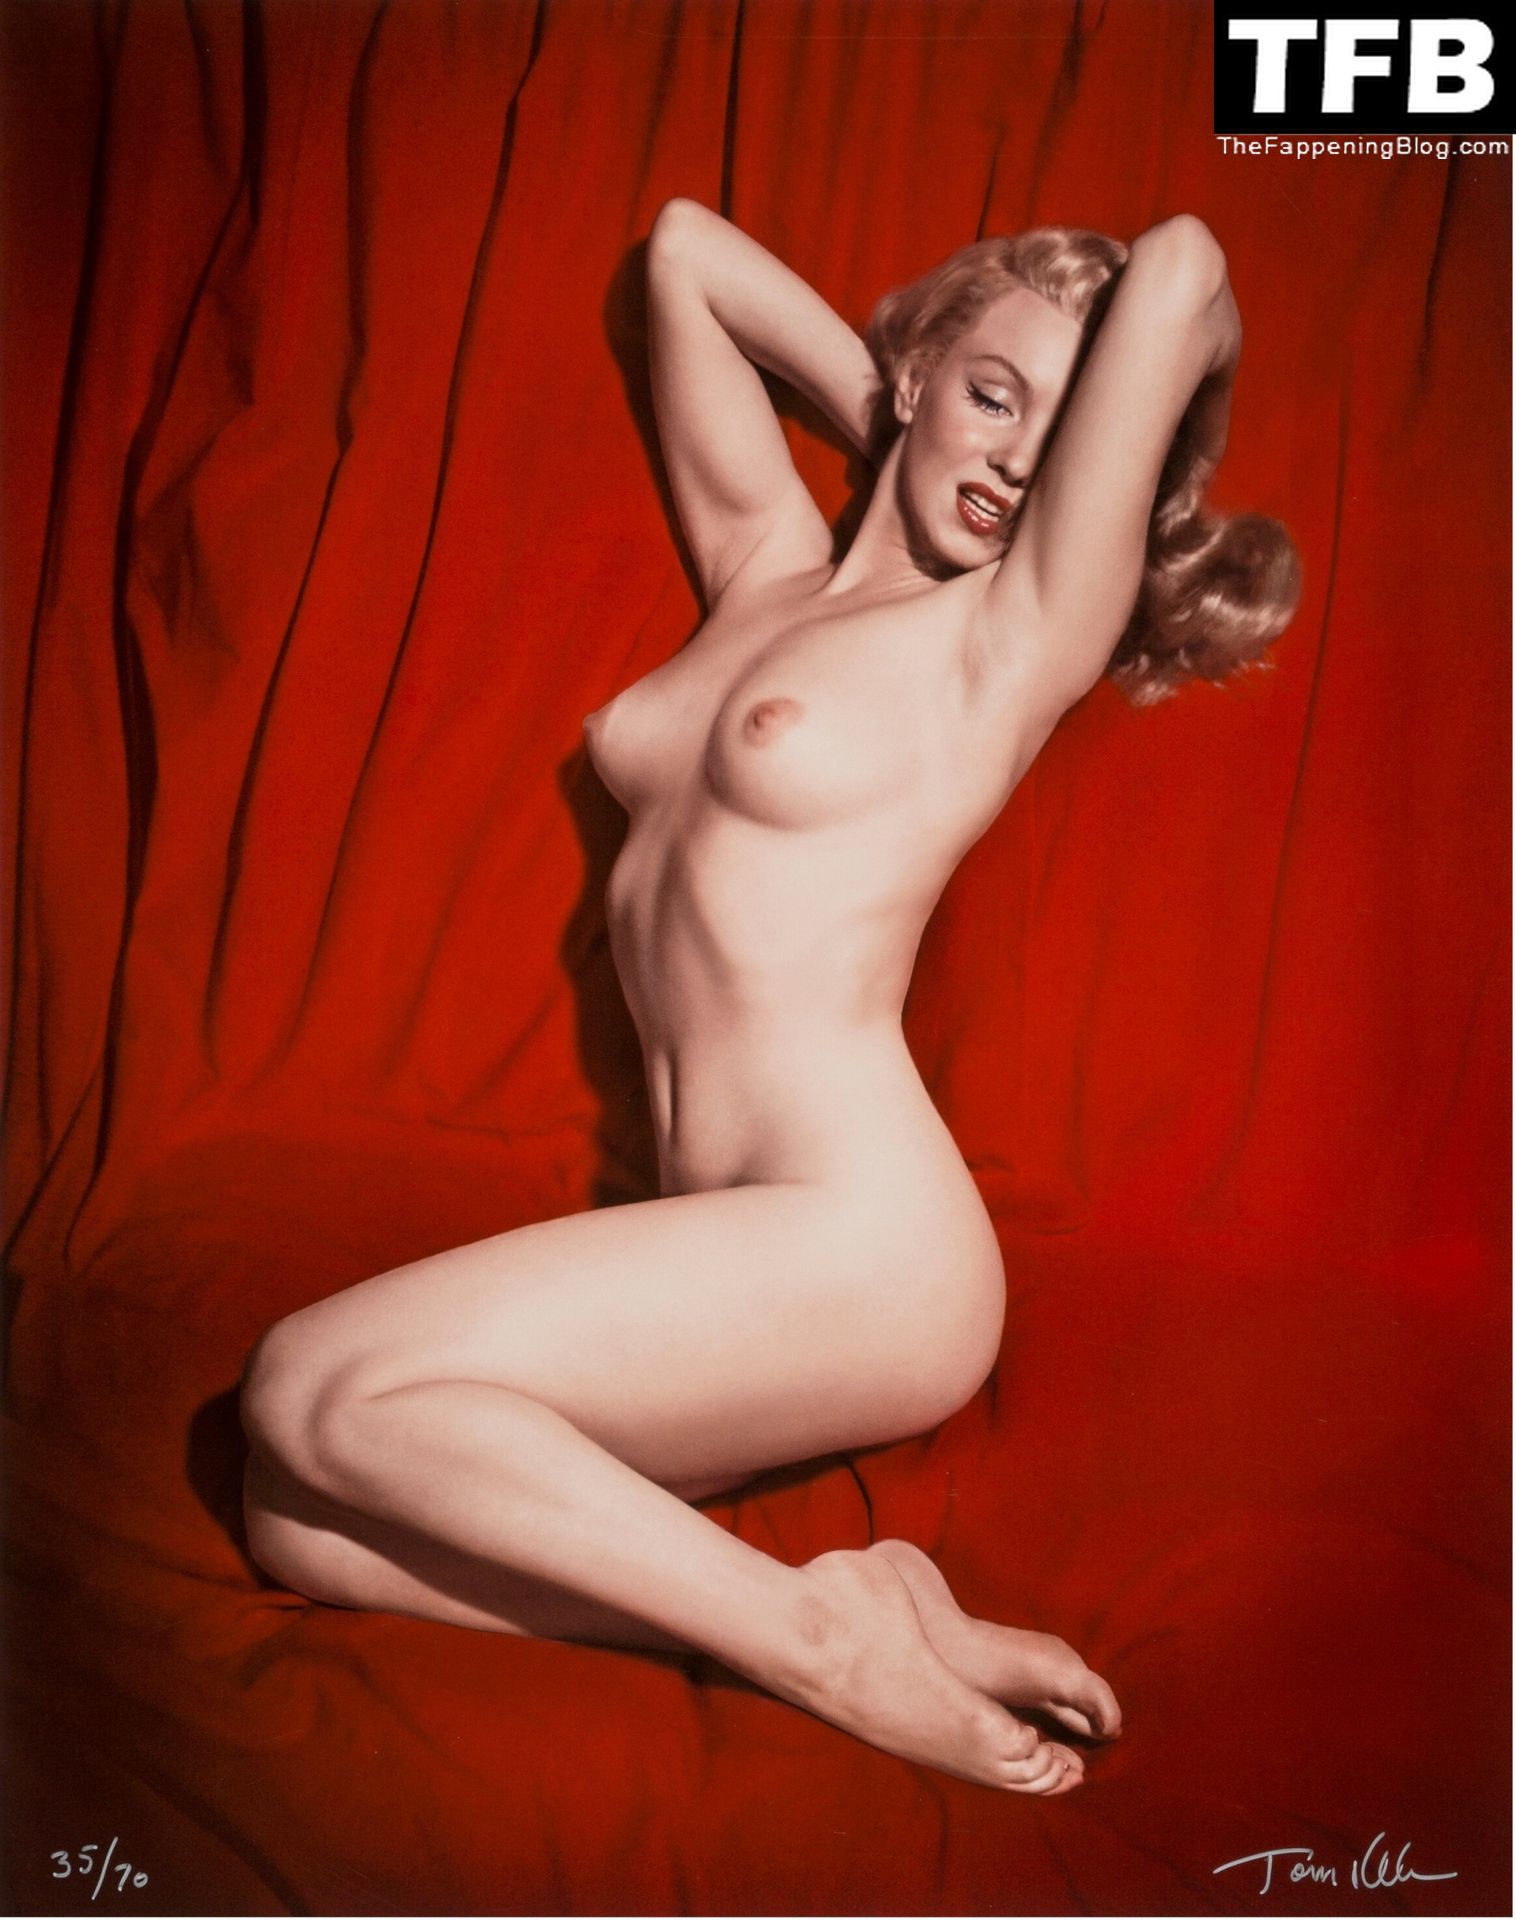 Marilyn-Monroe-Nude-The-Fappening-Blog-5.jpg